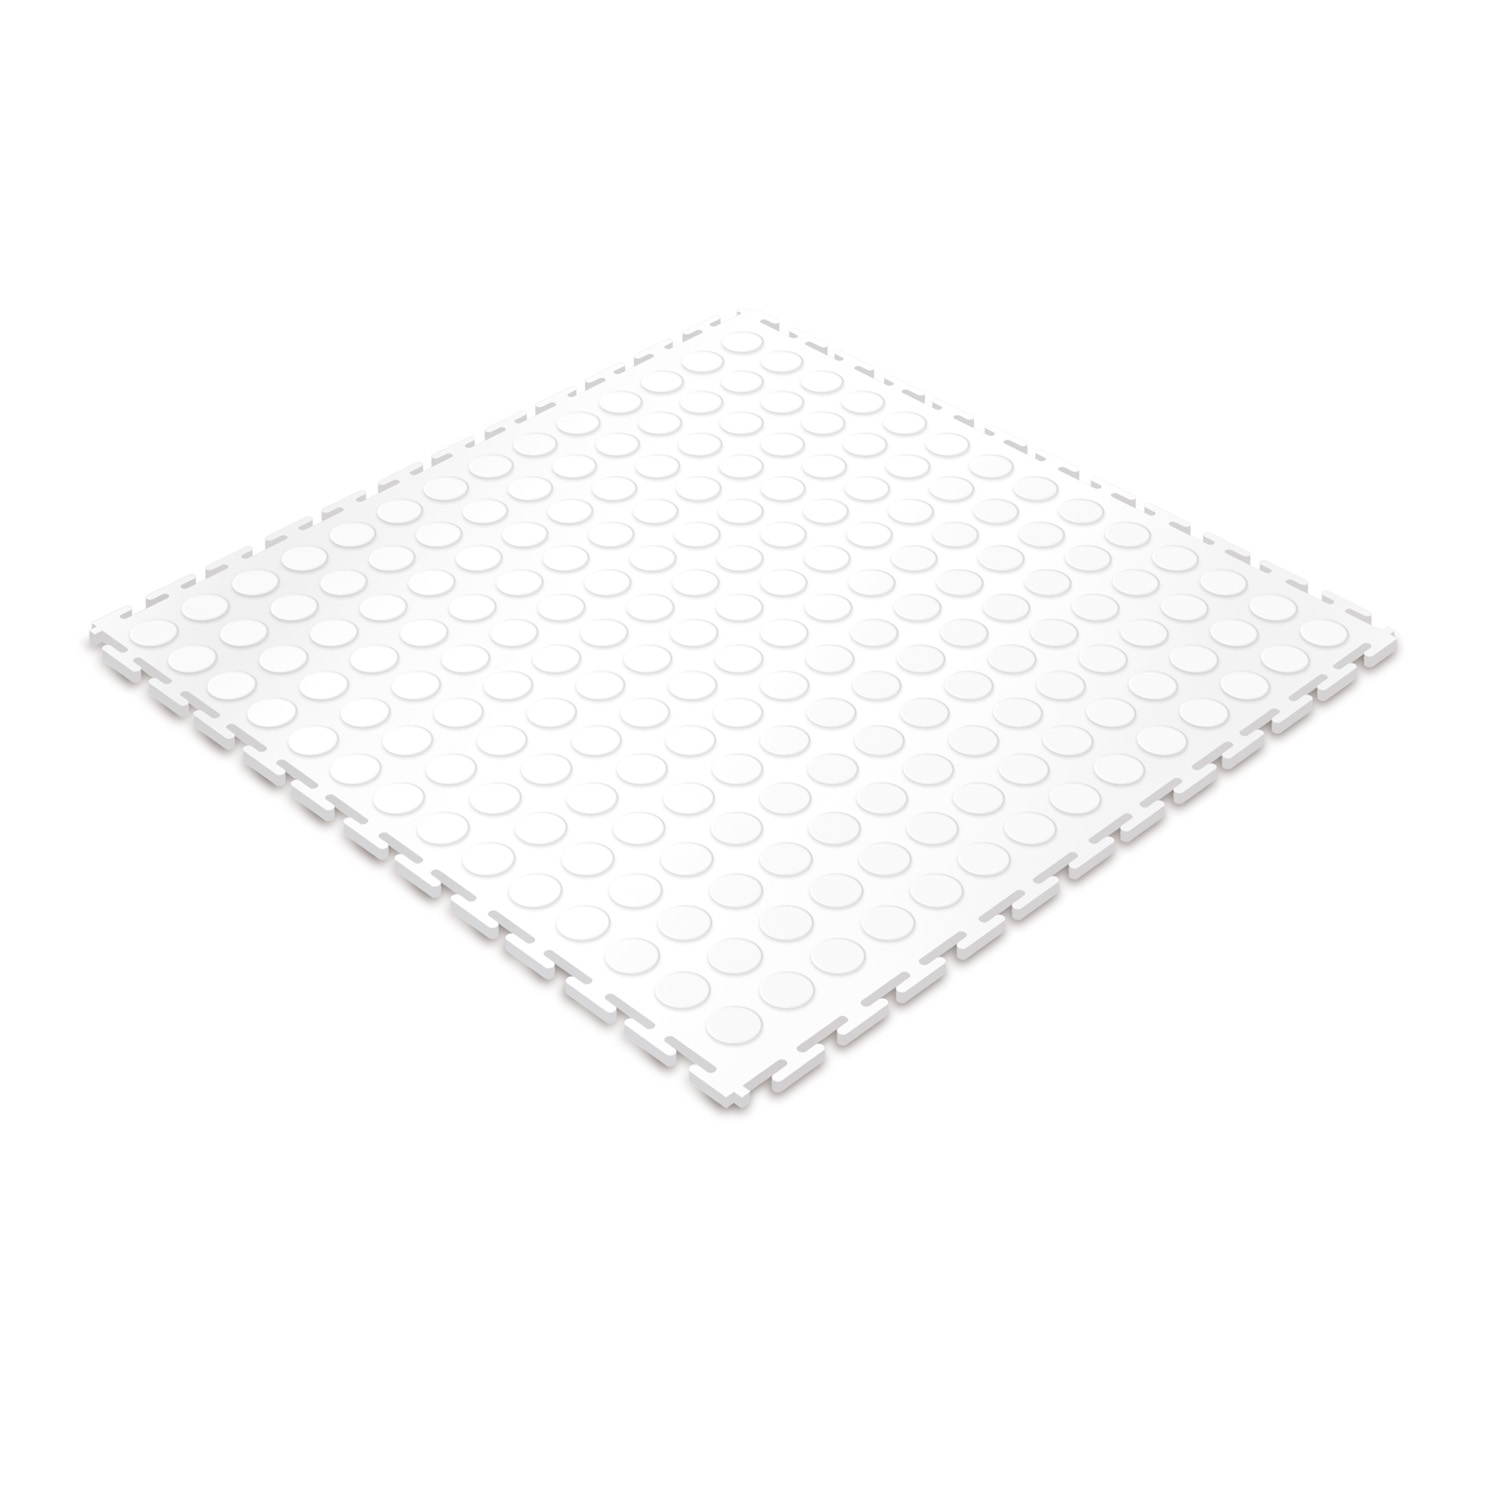 Heavy-duty floor tile (white/studded)